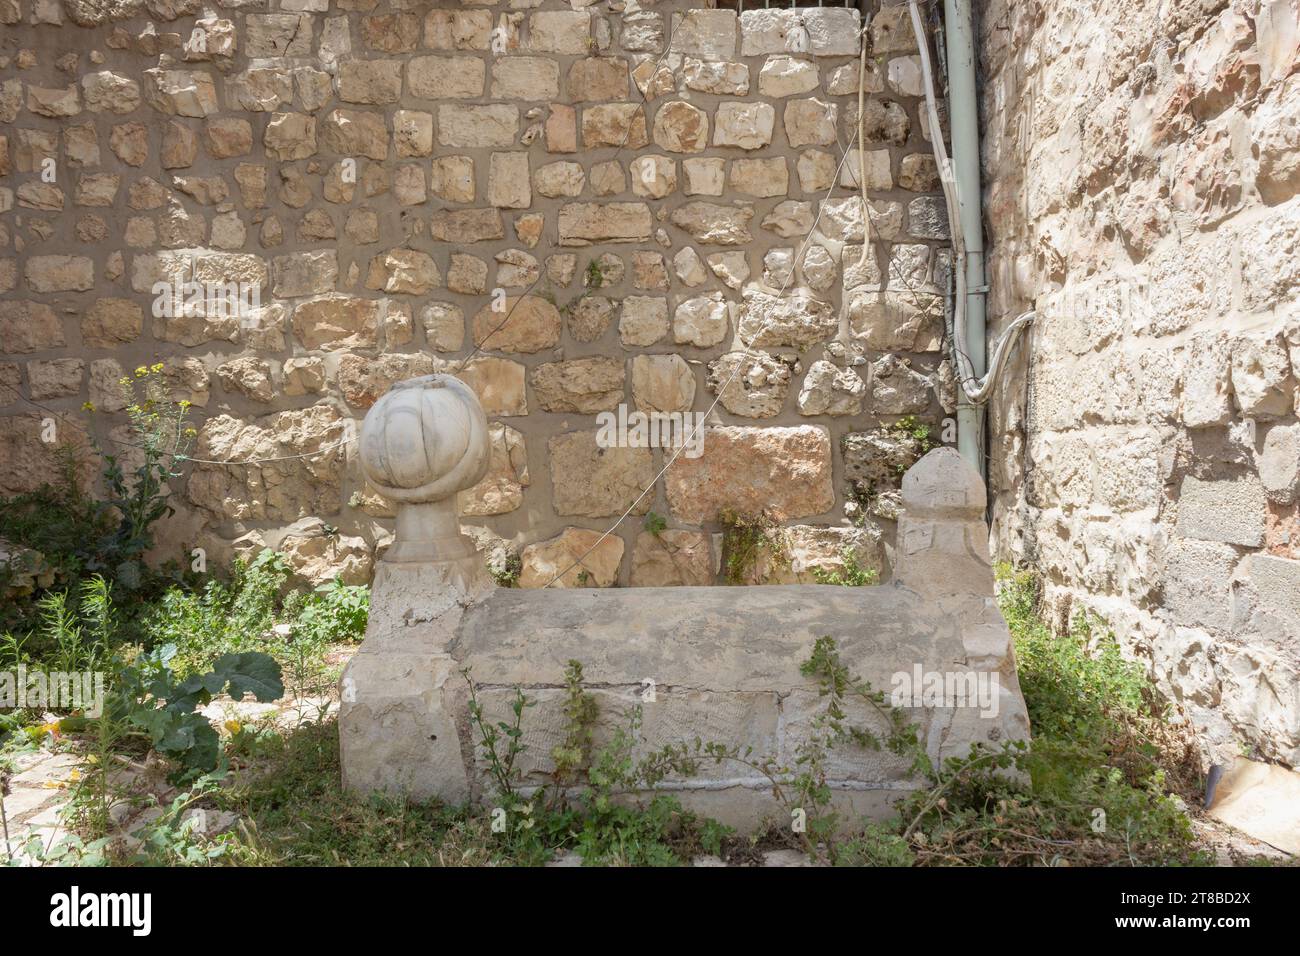 Jérusalem, Israël. L'une des deux tombes que l'on croit être celles des architectes des remparts de la vieille ville. Selon la légende, Suleiman le magnifique avait t Banque D'Images